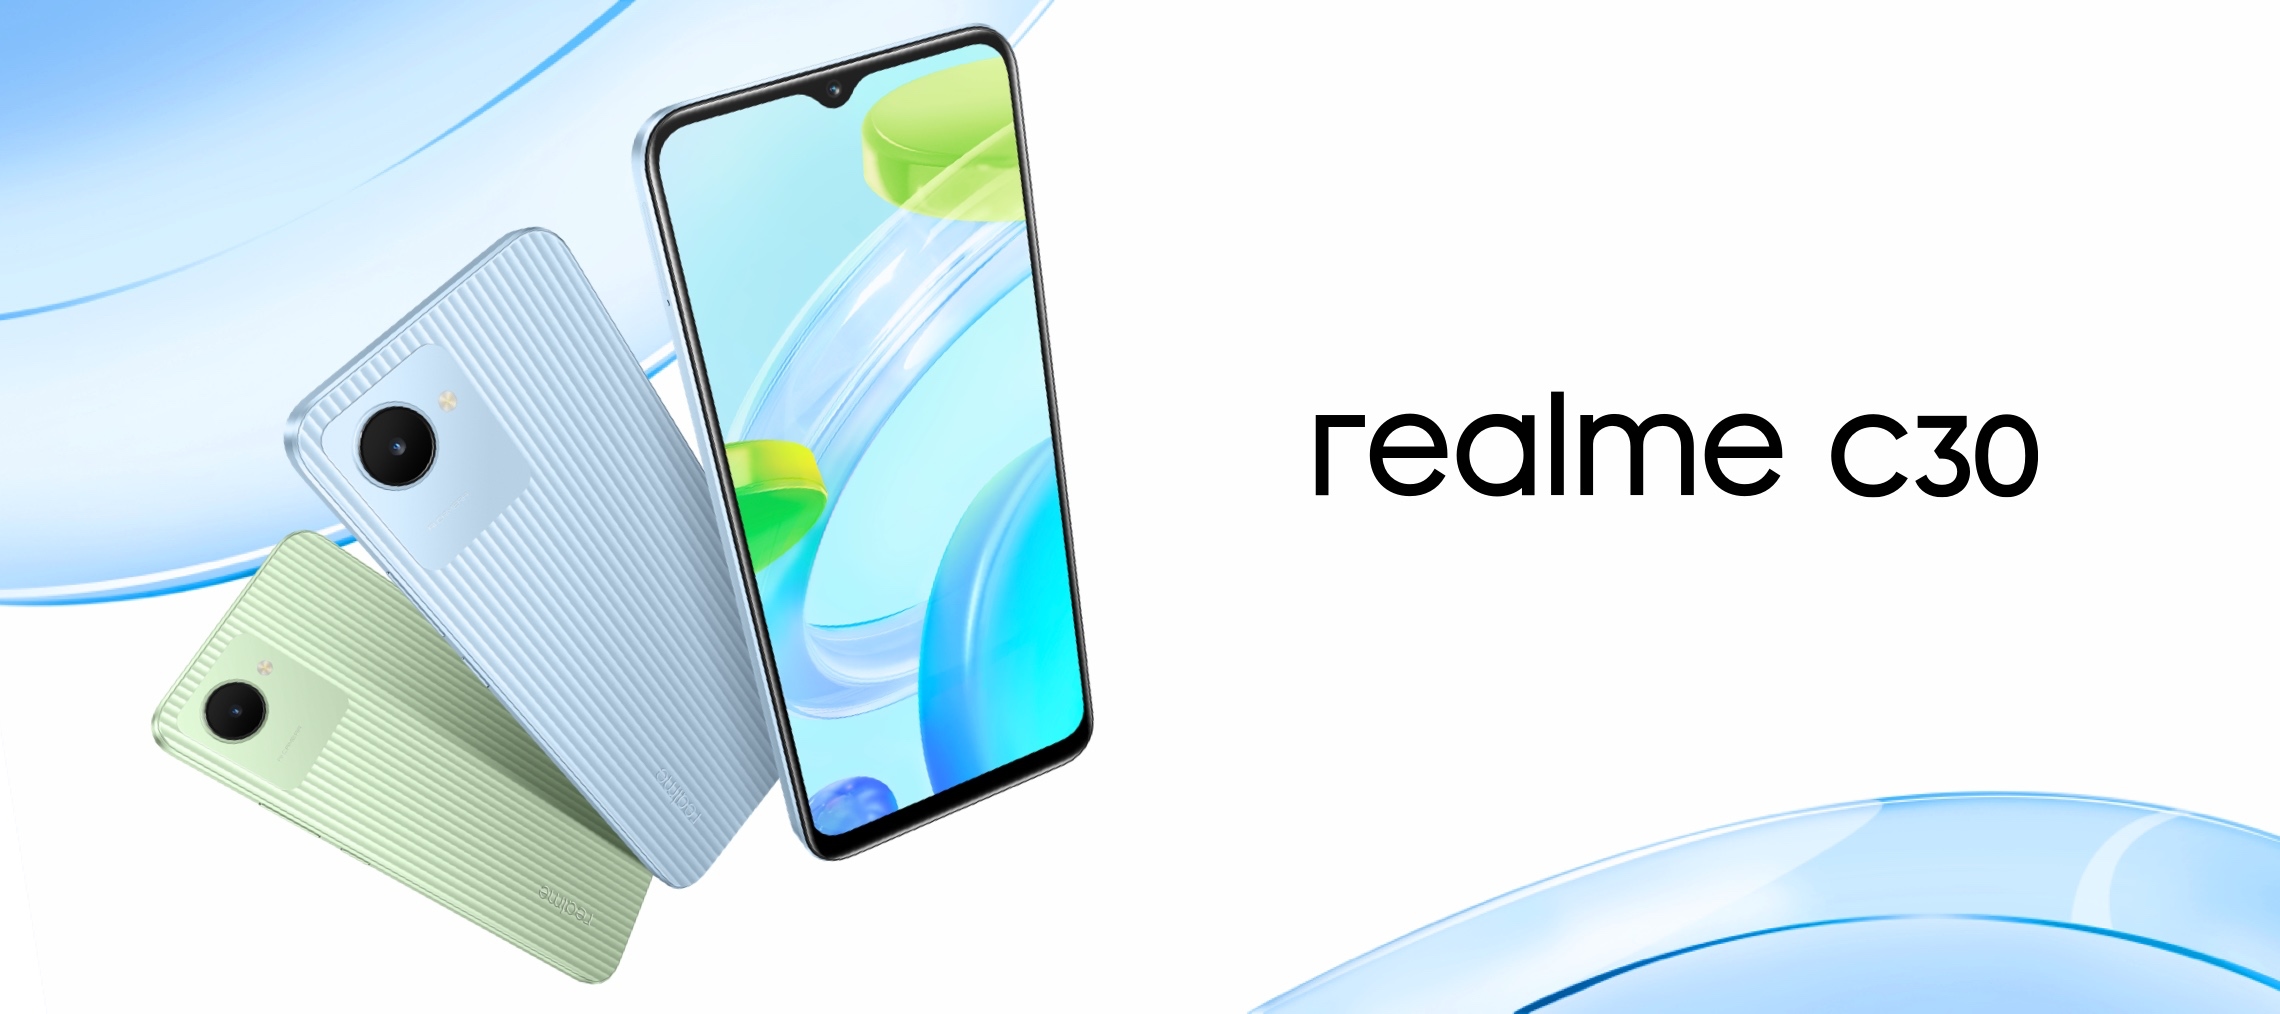 Presentato lo smartphone economico Realme C30 con batteria da 5000 mAh e prezzo di $ 100